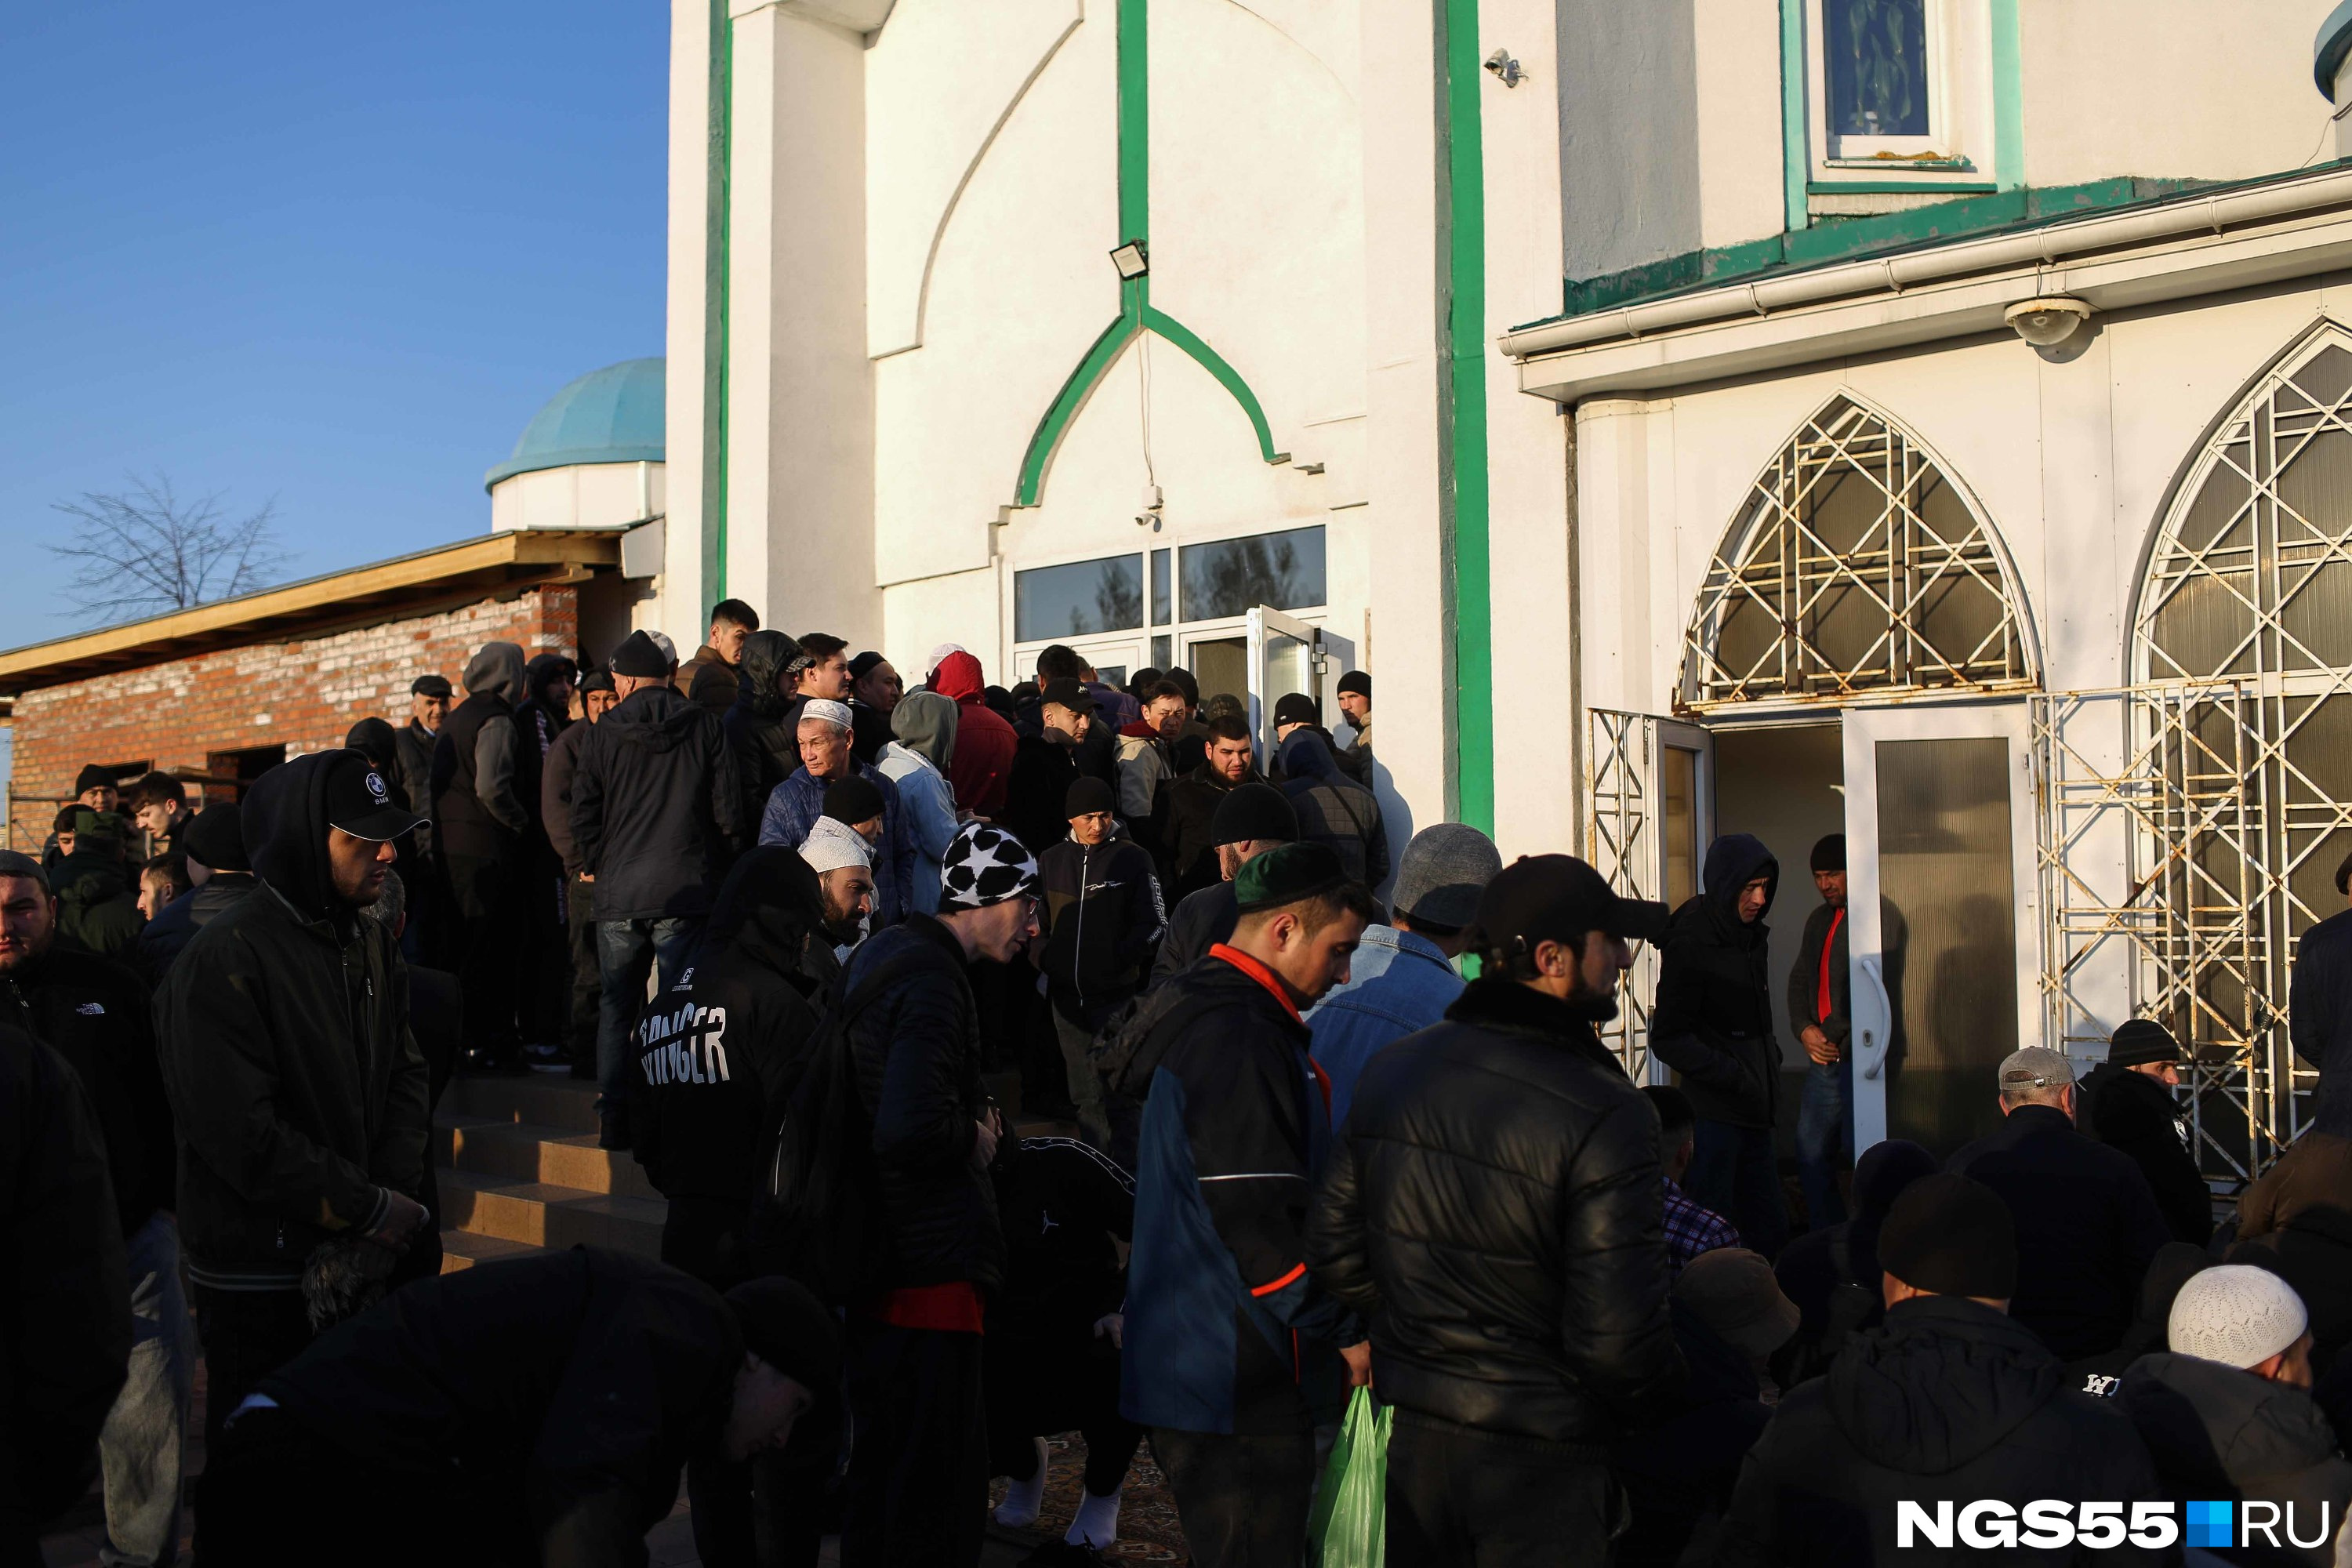 Традиционно самое большое скопление людей в Центральной соборной мечети на улице <nobr>20-я</nobr> Линия